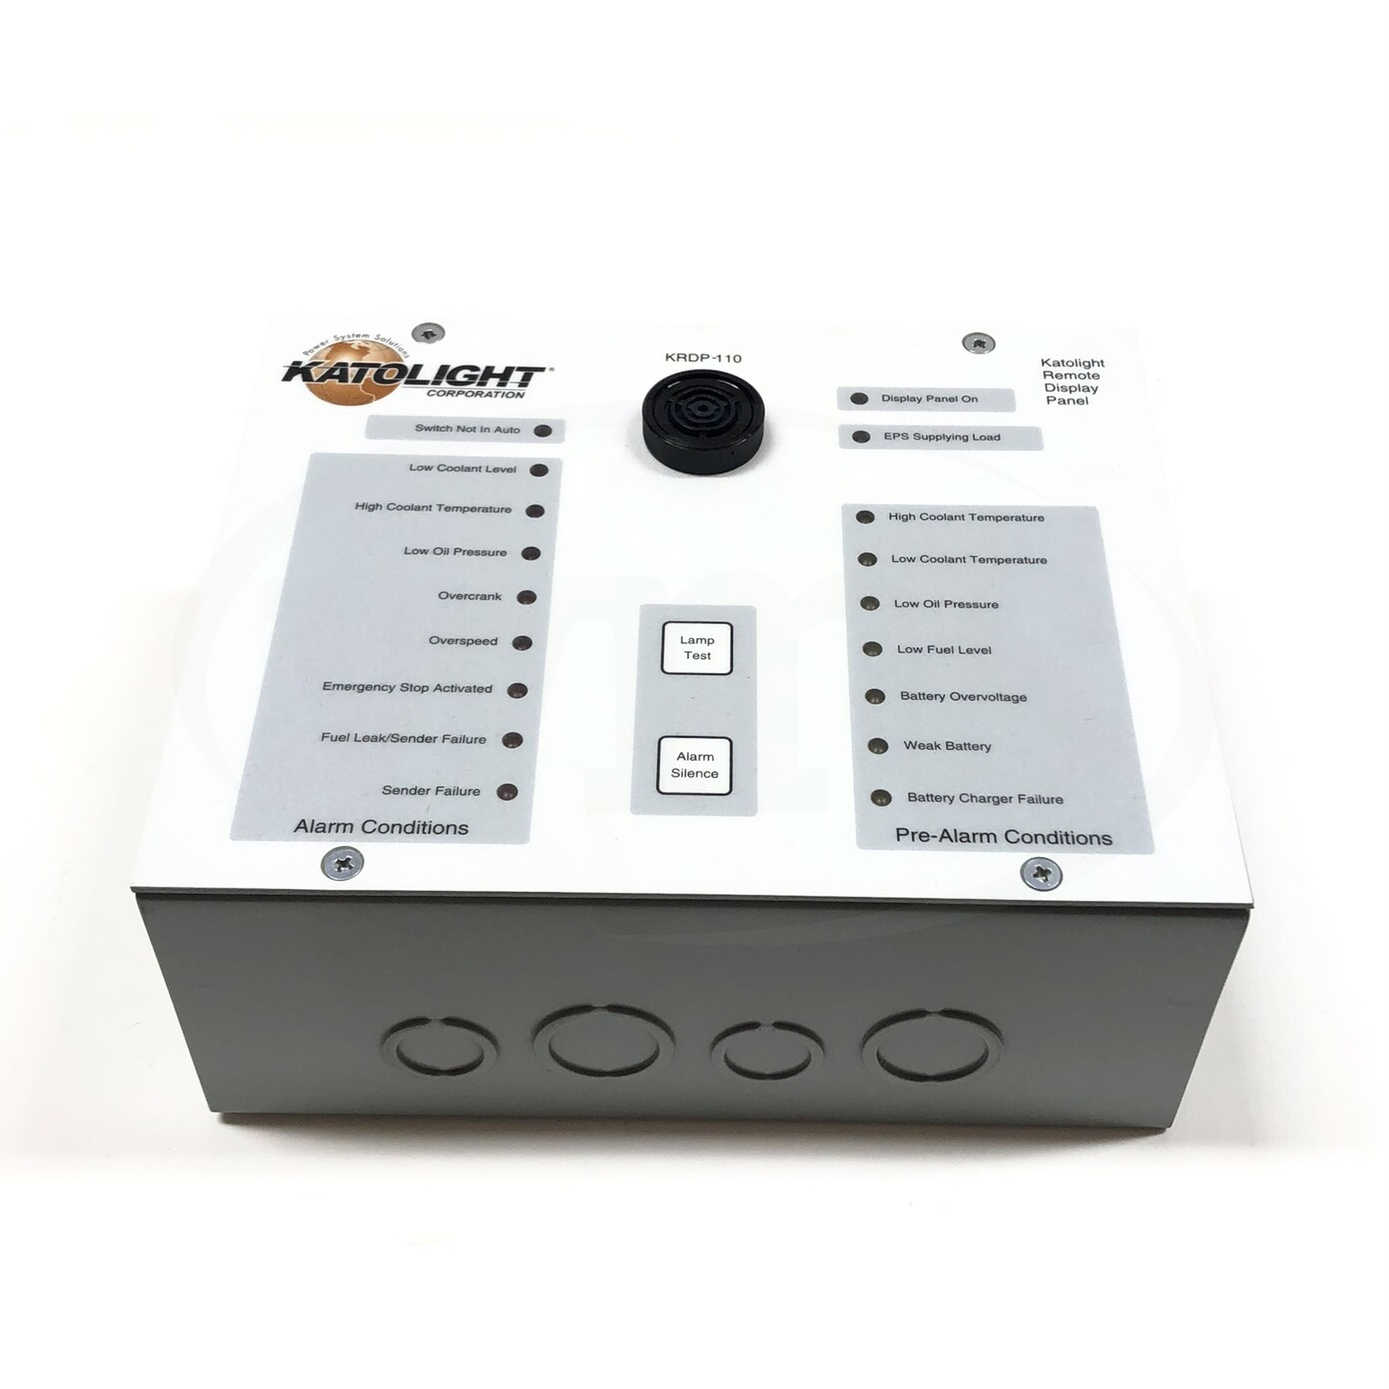 KRDP-110 Basler Katolight Alarm Remote Display Panel 1